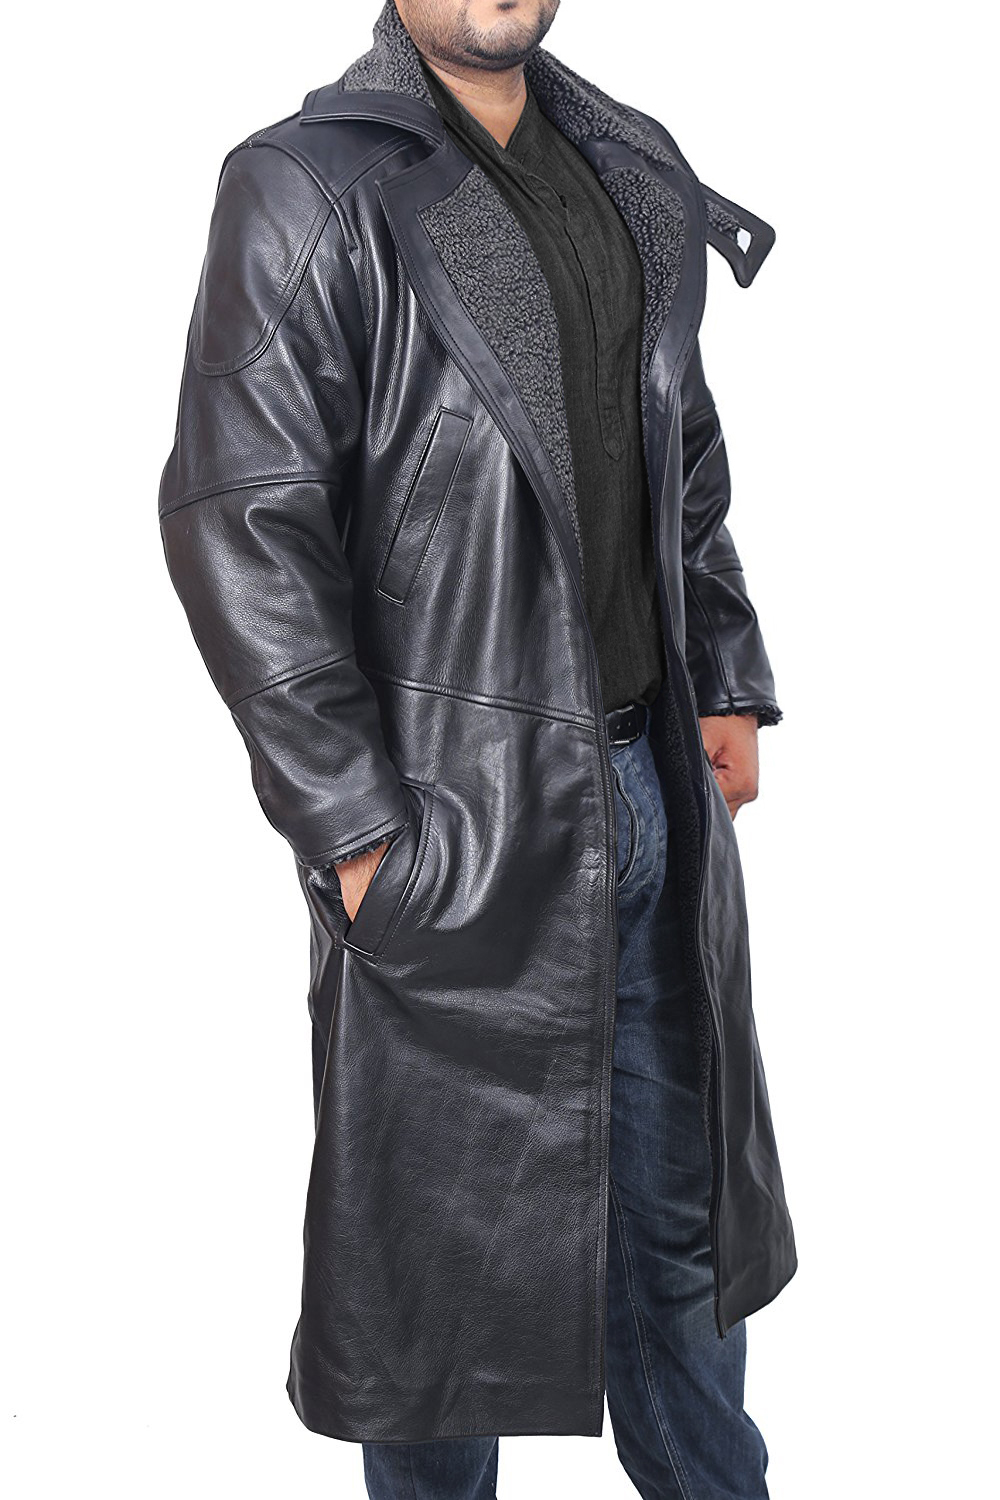 50% Off Blade Runner Trench Coat | Blade Runner Costume | Christmas ...